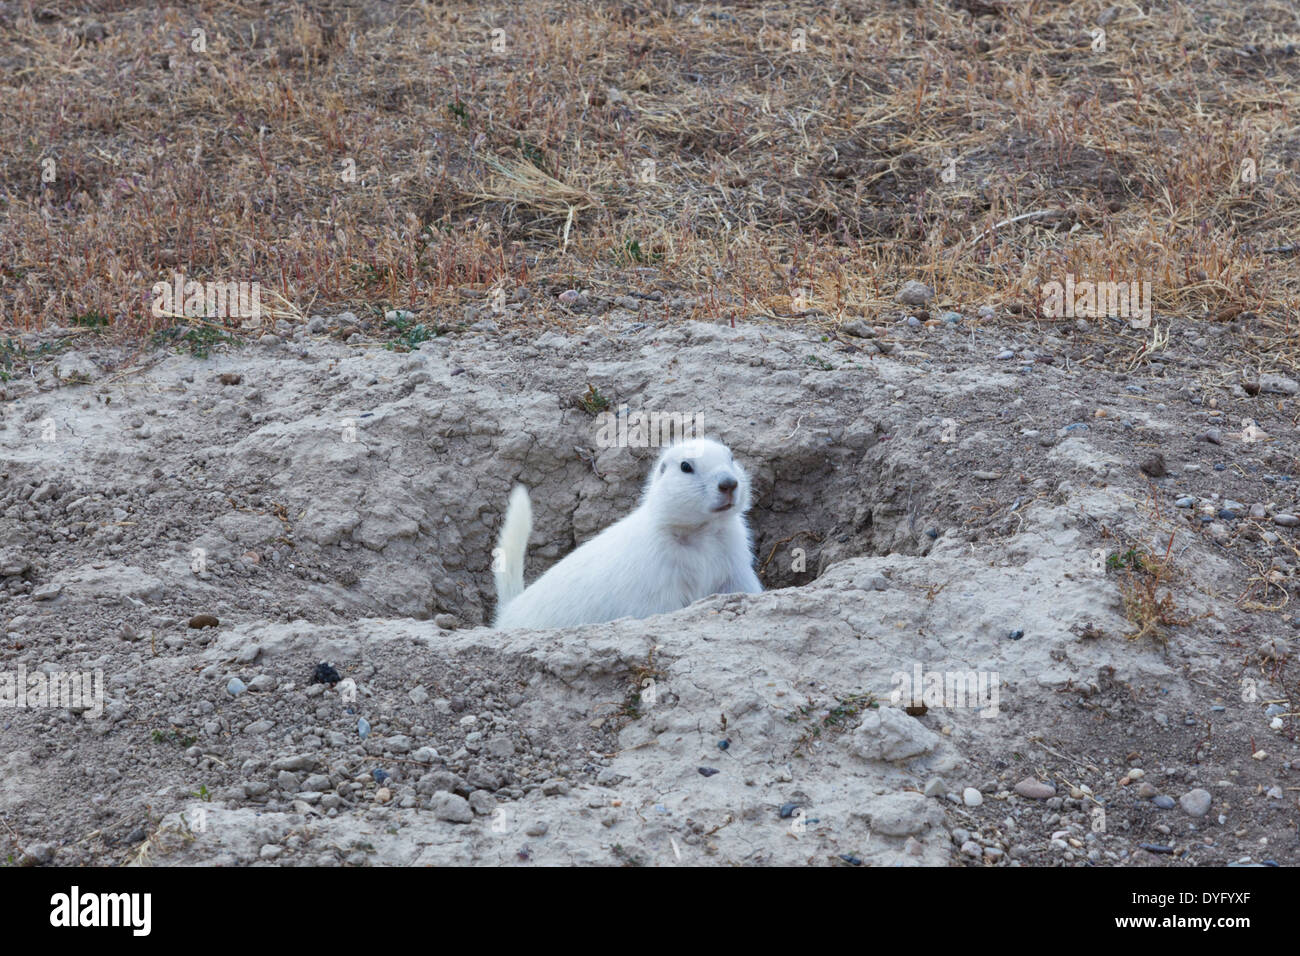 USA, South Dakota, Cactus Flat. White prairie dog (Cynomys leucurus). Stock Photo